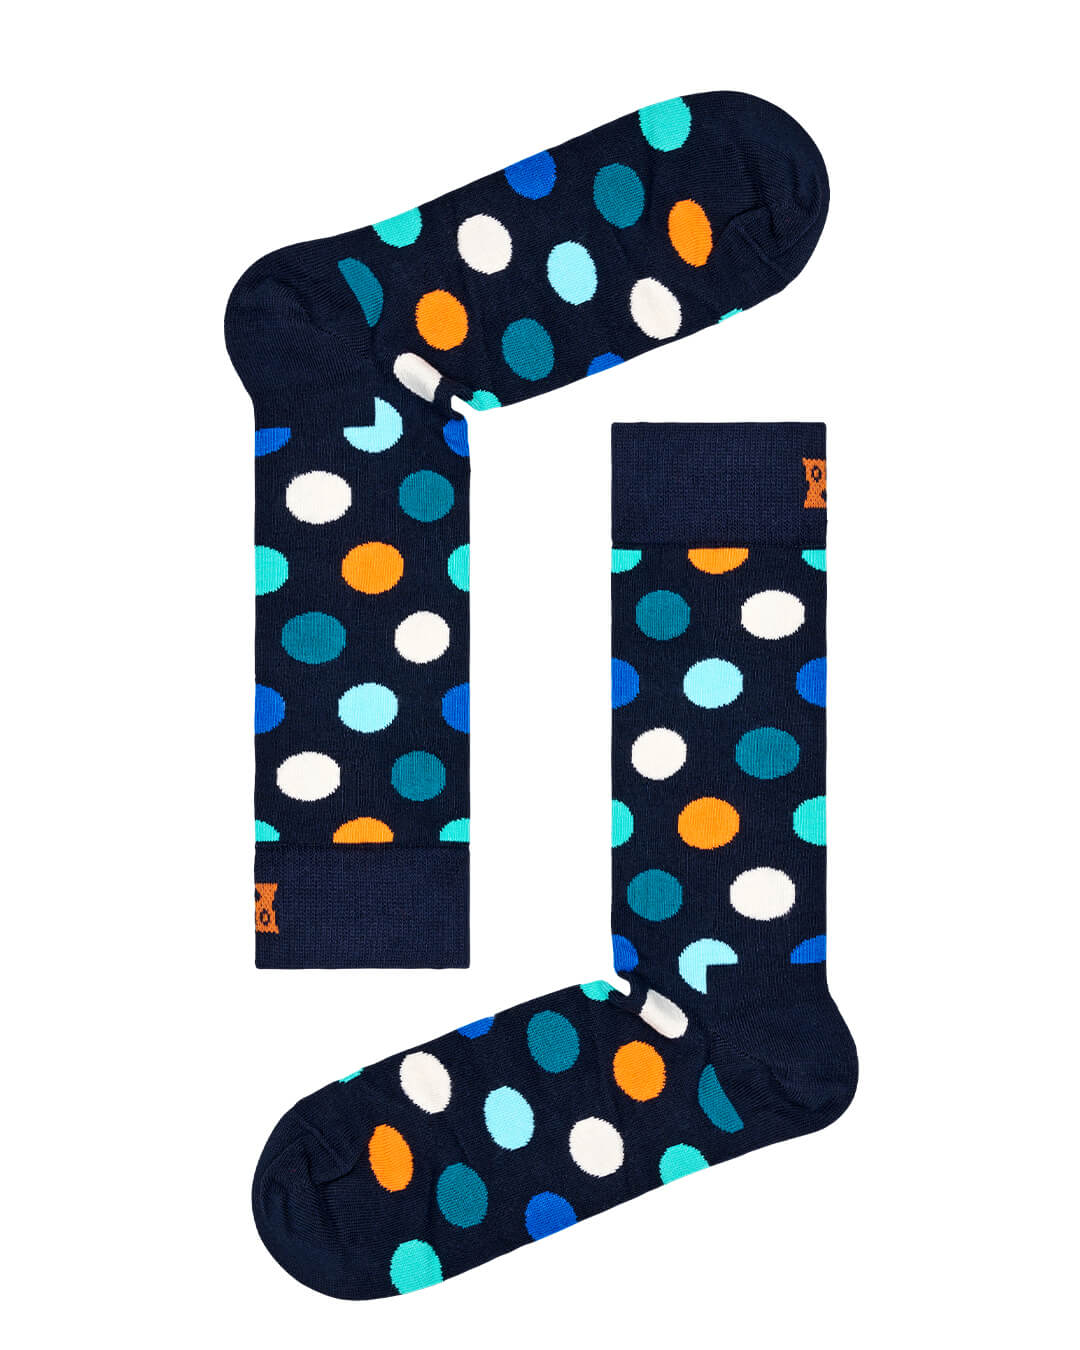 Happy Socks Socks Happy Socks 4-Pack Multi-color Socks Gift Set